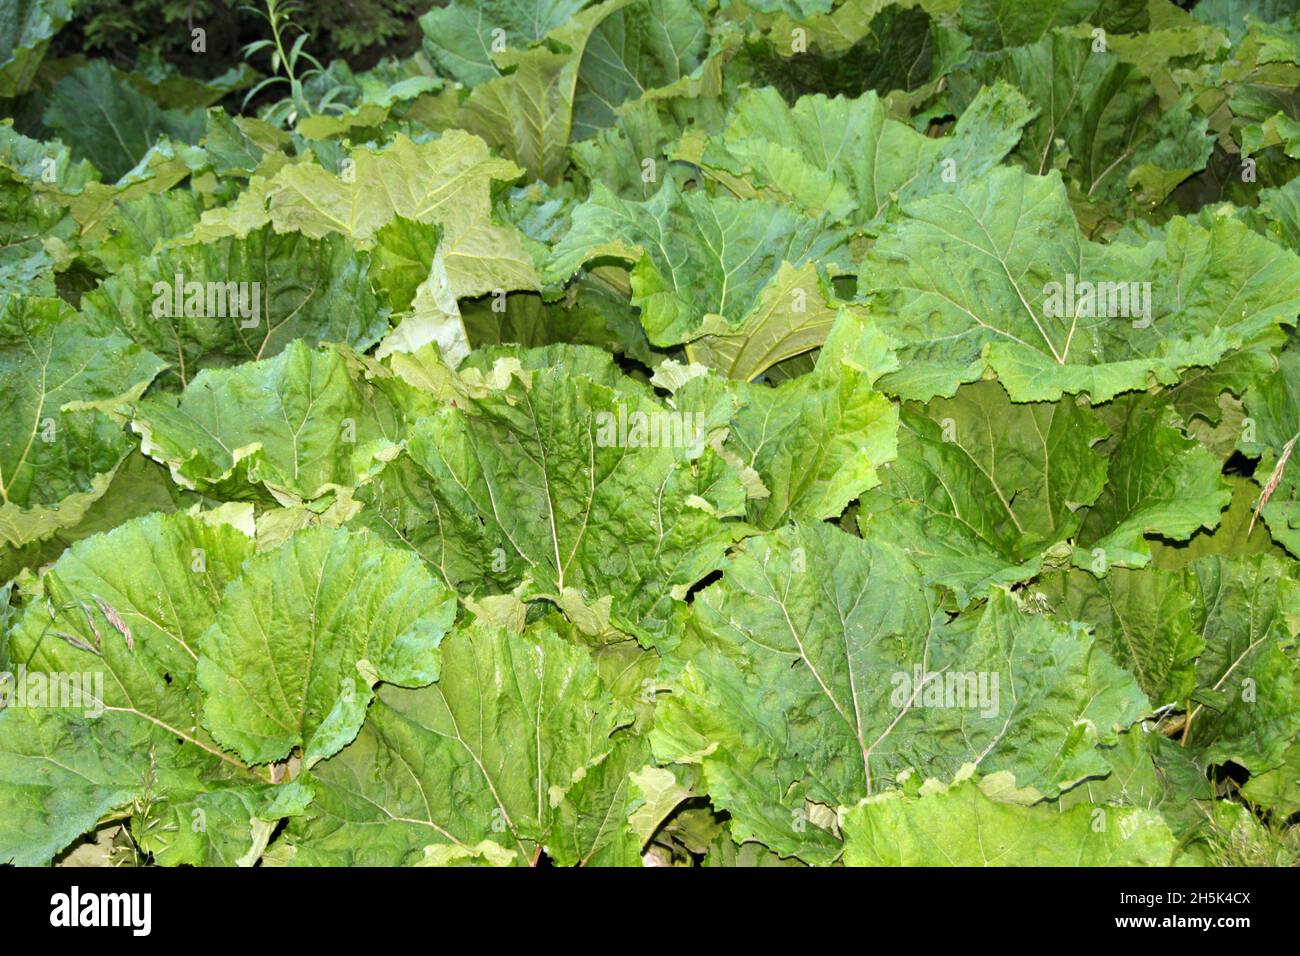 Rheum rhaponticum leaves Stock Photo